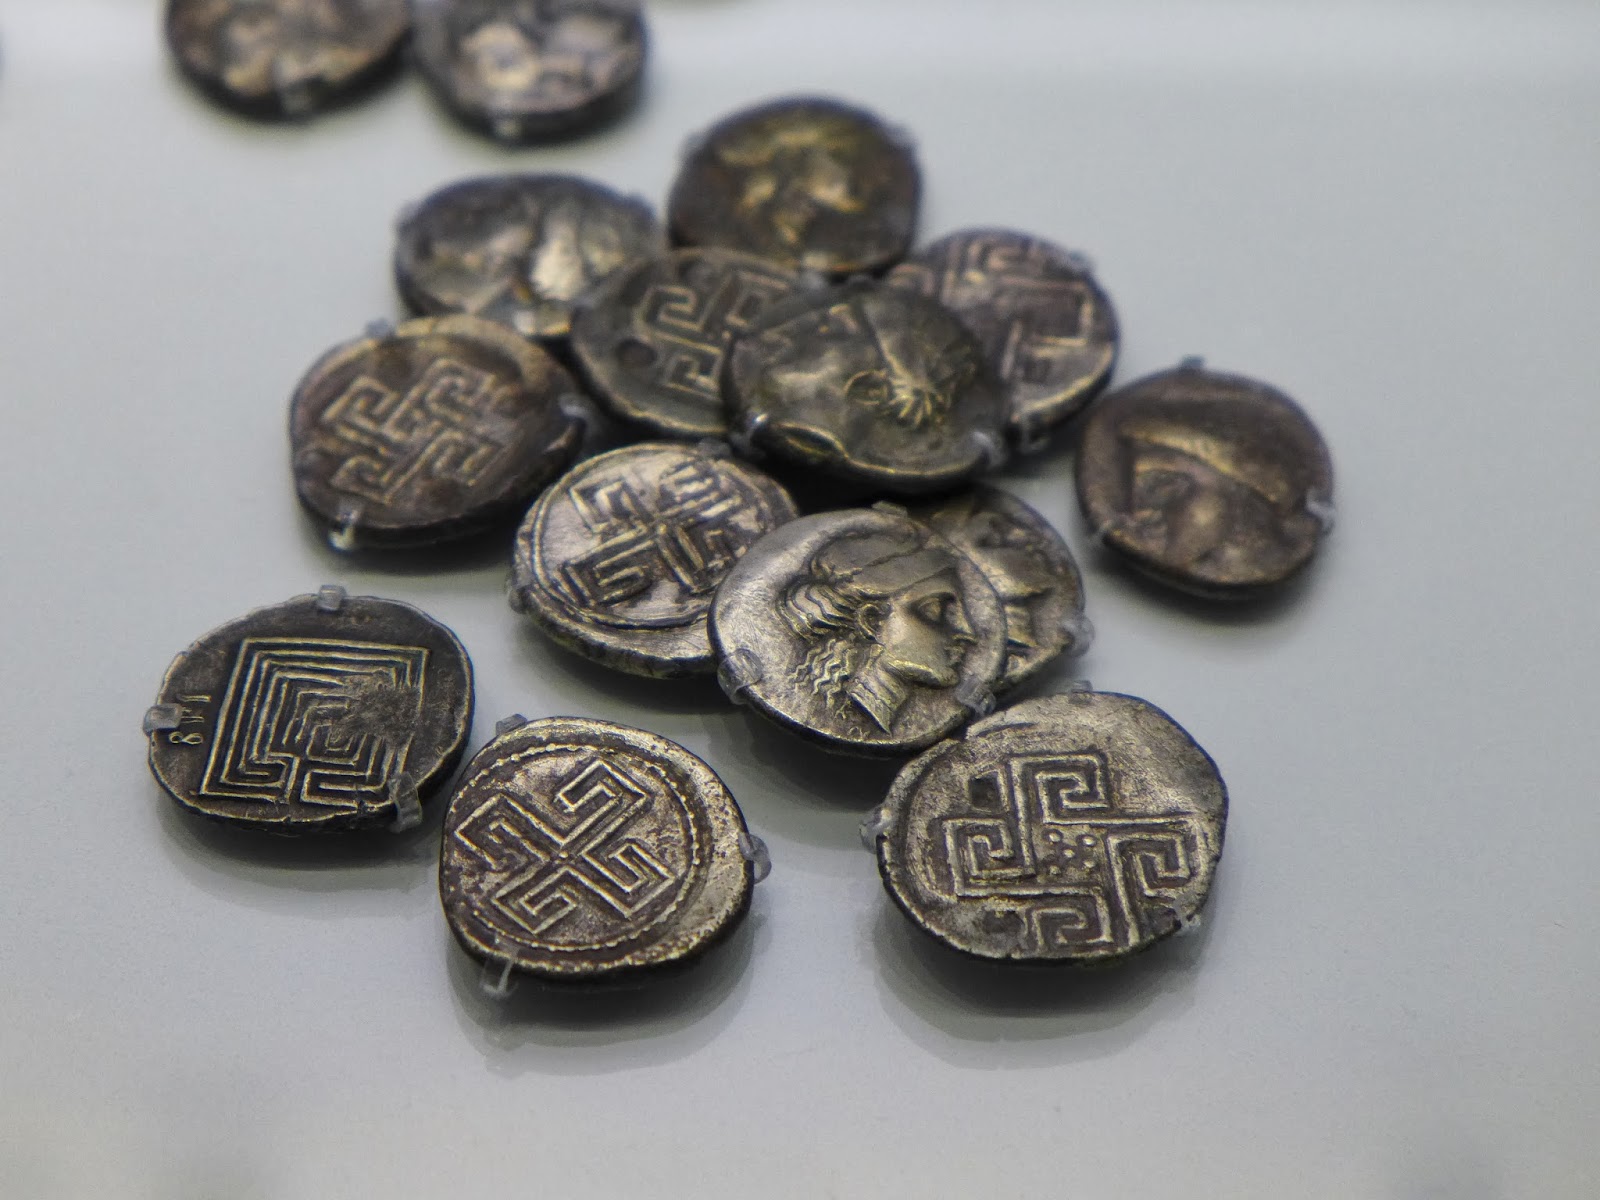 เขาวงกต ไมนอส เหรียญ Minos coin Labyrinth coins